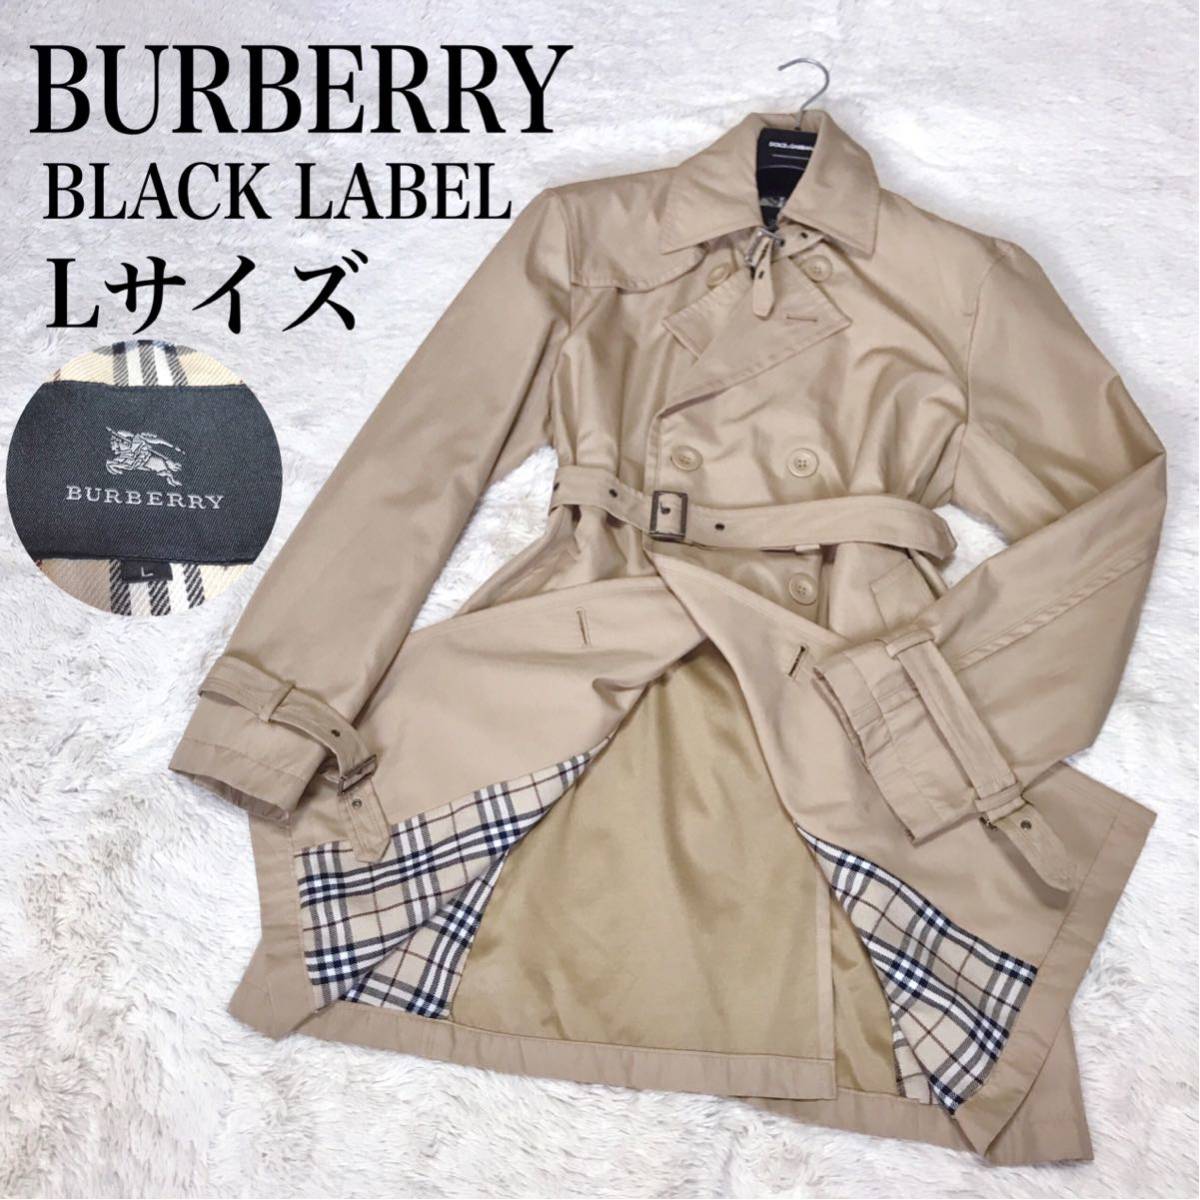 美品 バーバリーブラックレーベル トレンチコート ベルト ノバチェック 金具 BURBERRY BLACK LABEL ロングコート ジャケット